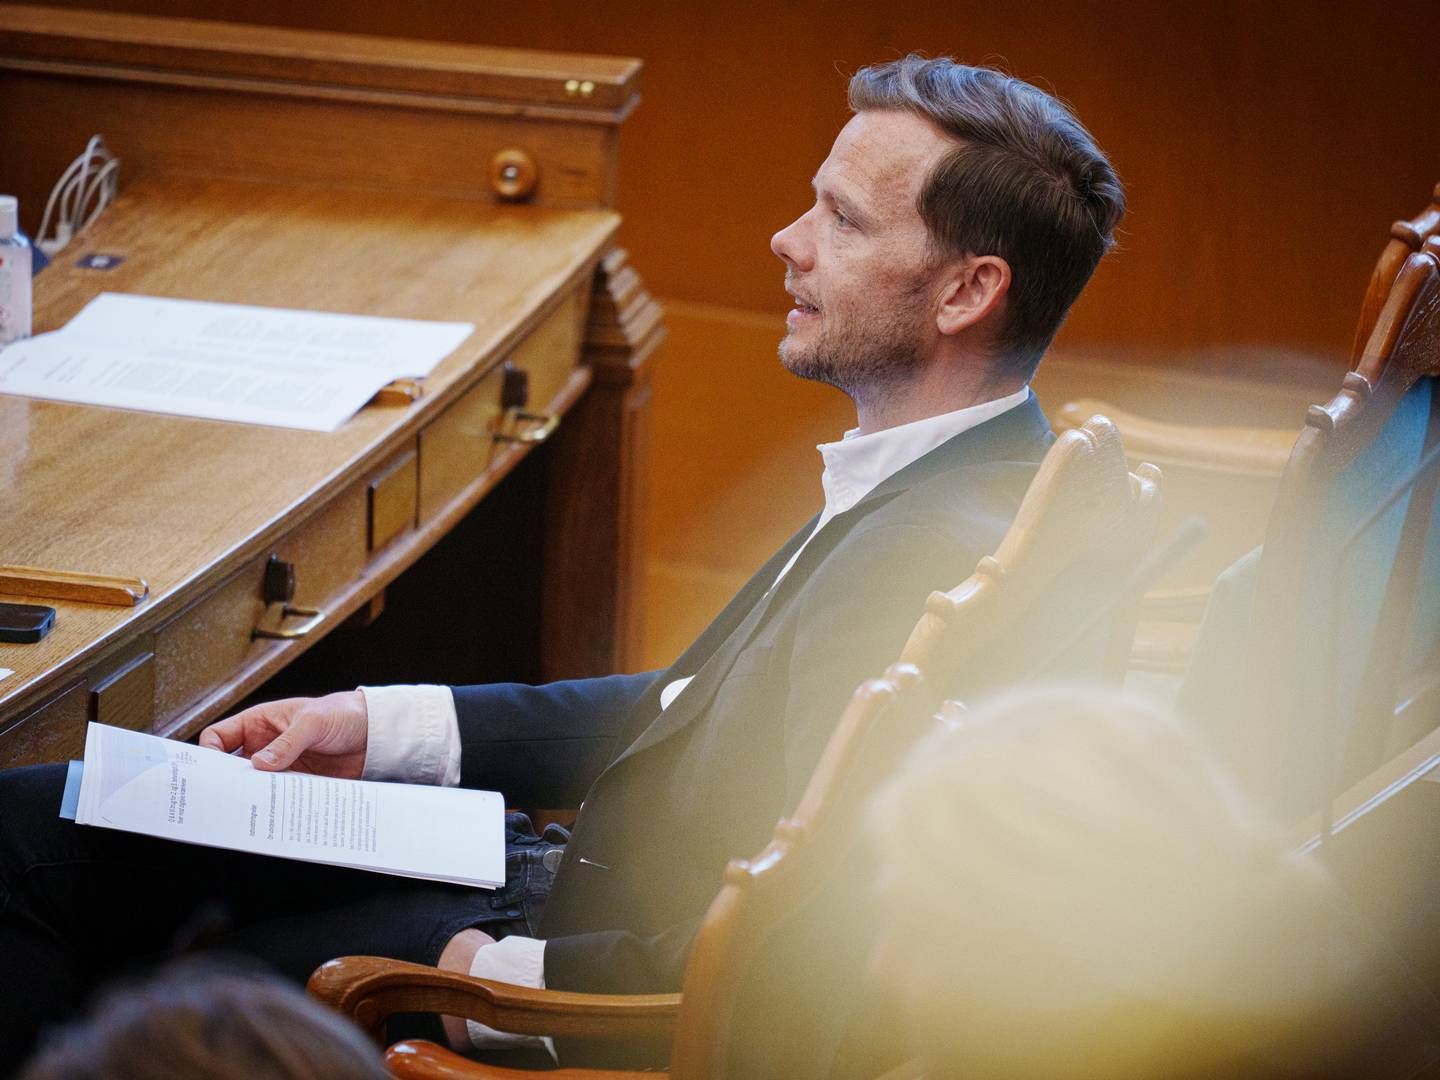 Justitsminister Peter Hummelgaard (S) har blandt andet bedt rådet om at indhente erfaringer fra andre lande. | Foto: Liselotte Sabroe